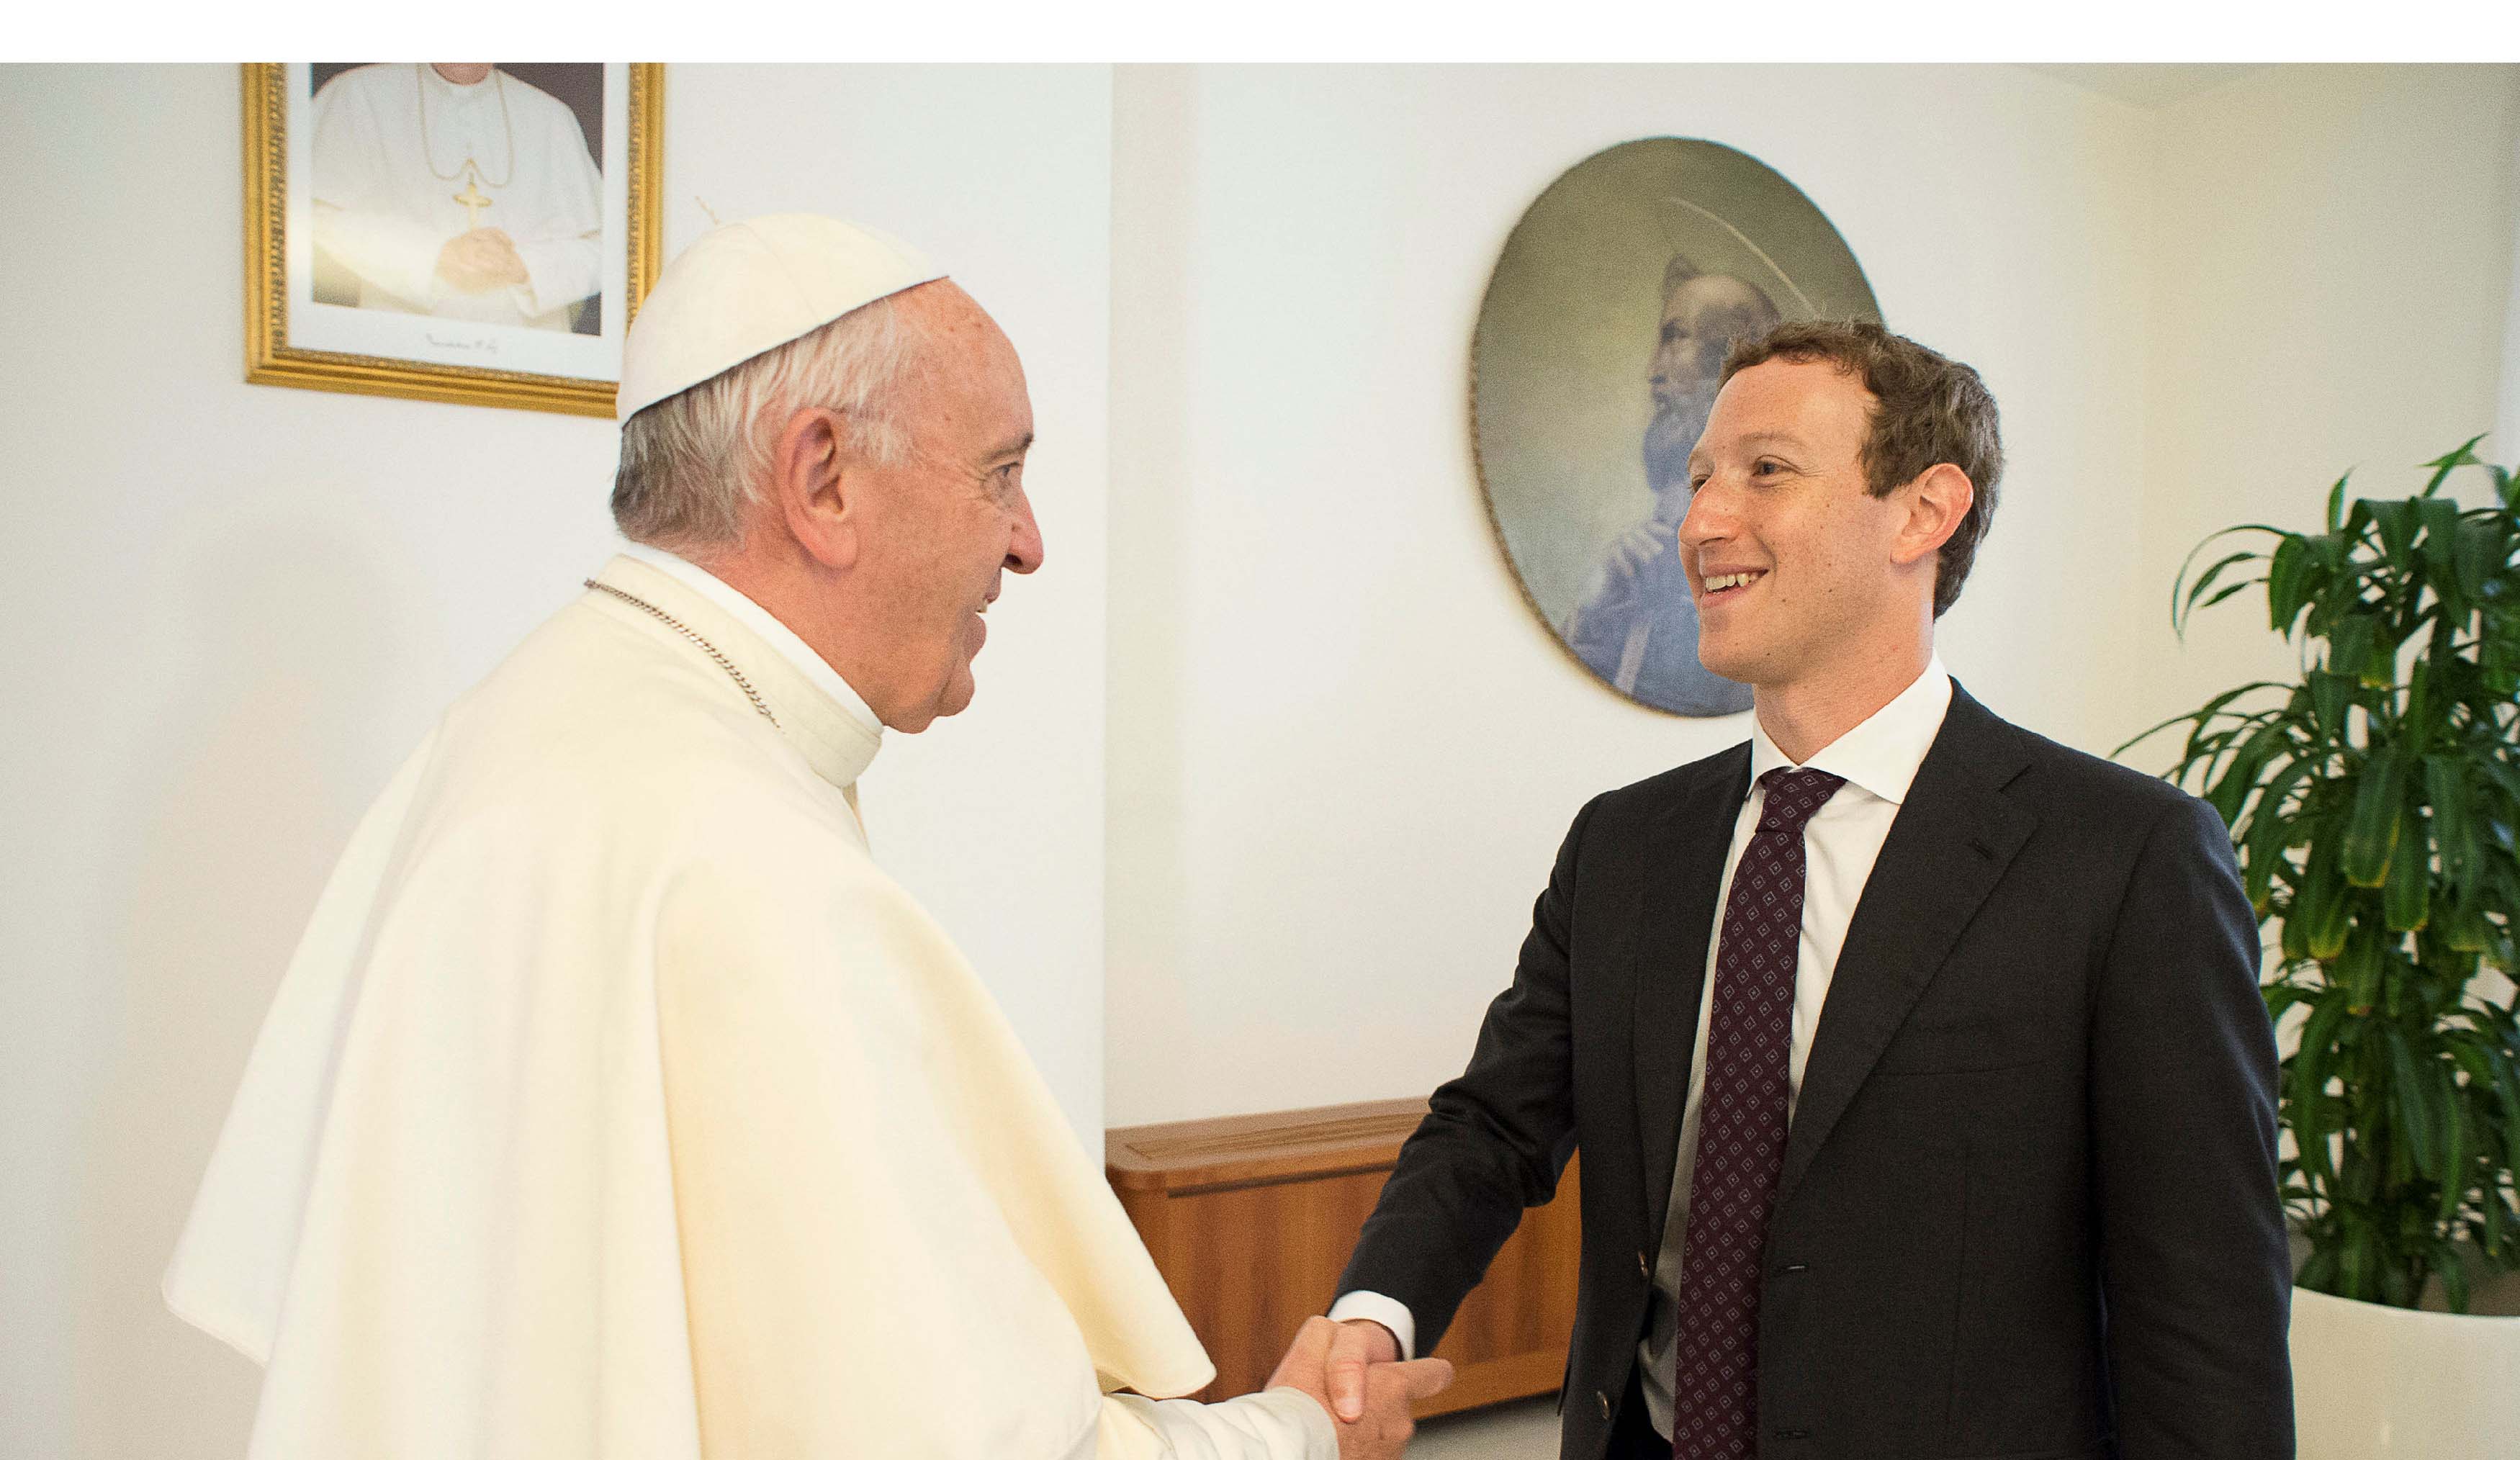 El papa Francisco recibió al CEO de Facebook, Mark Zuckerberg para conversar sobre el aporte de las tecnologías de la comunicación en la lucha contra la pobreza